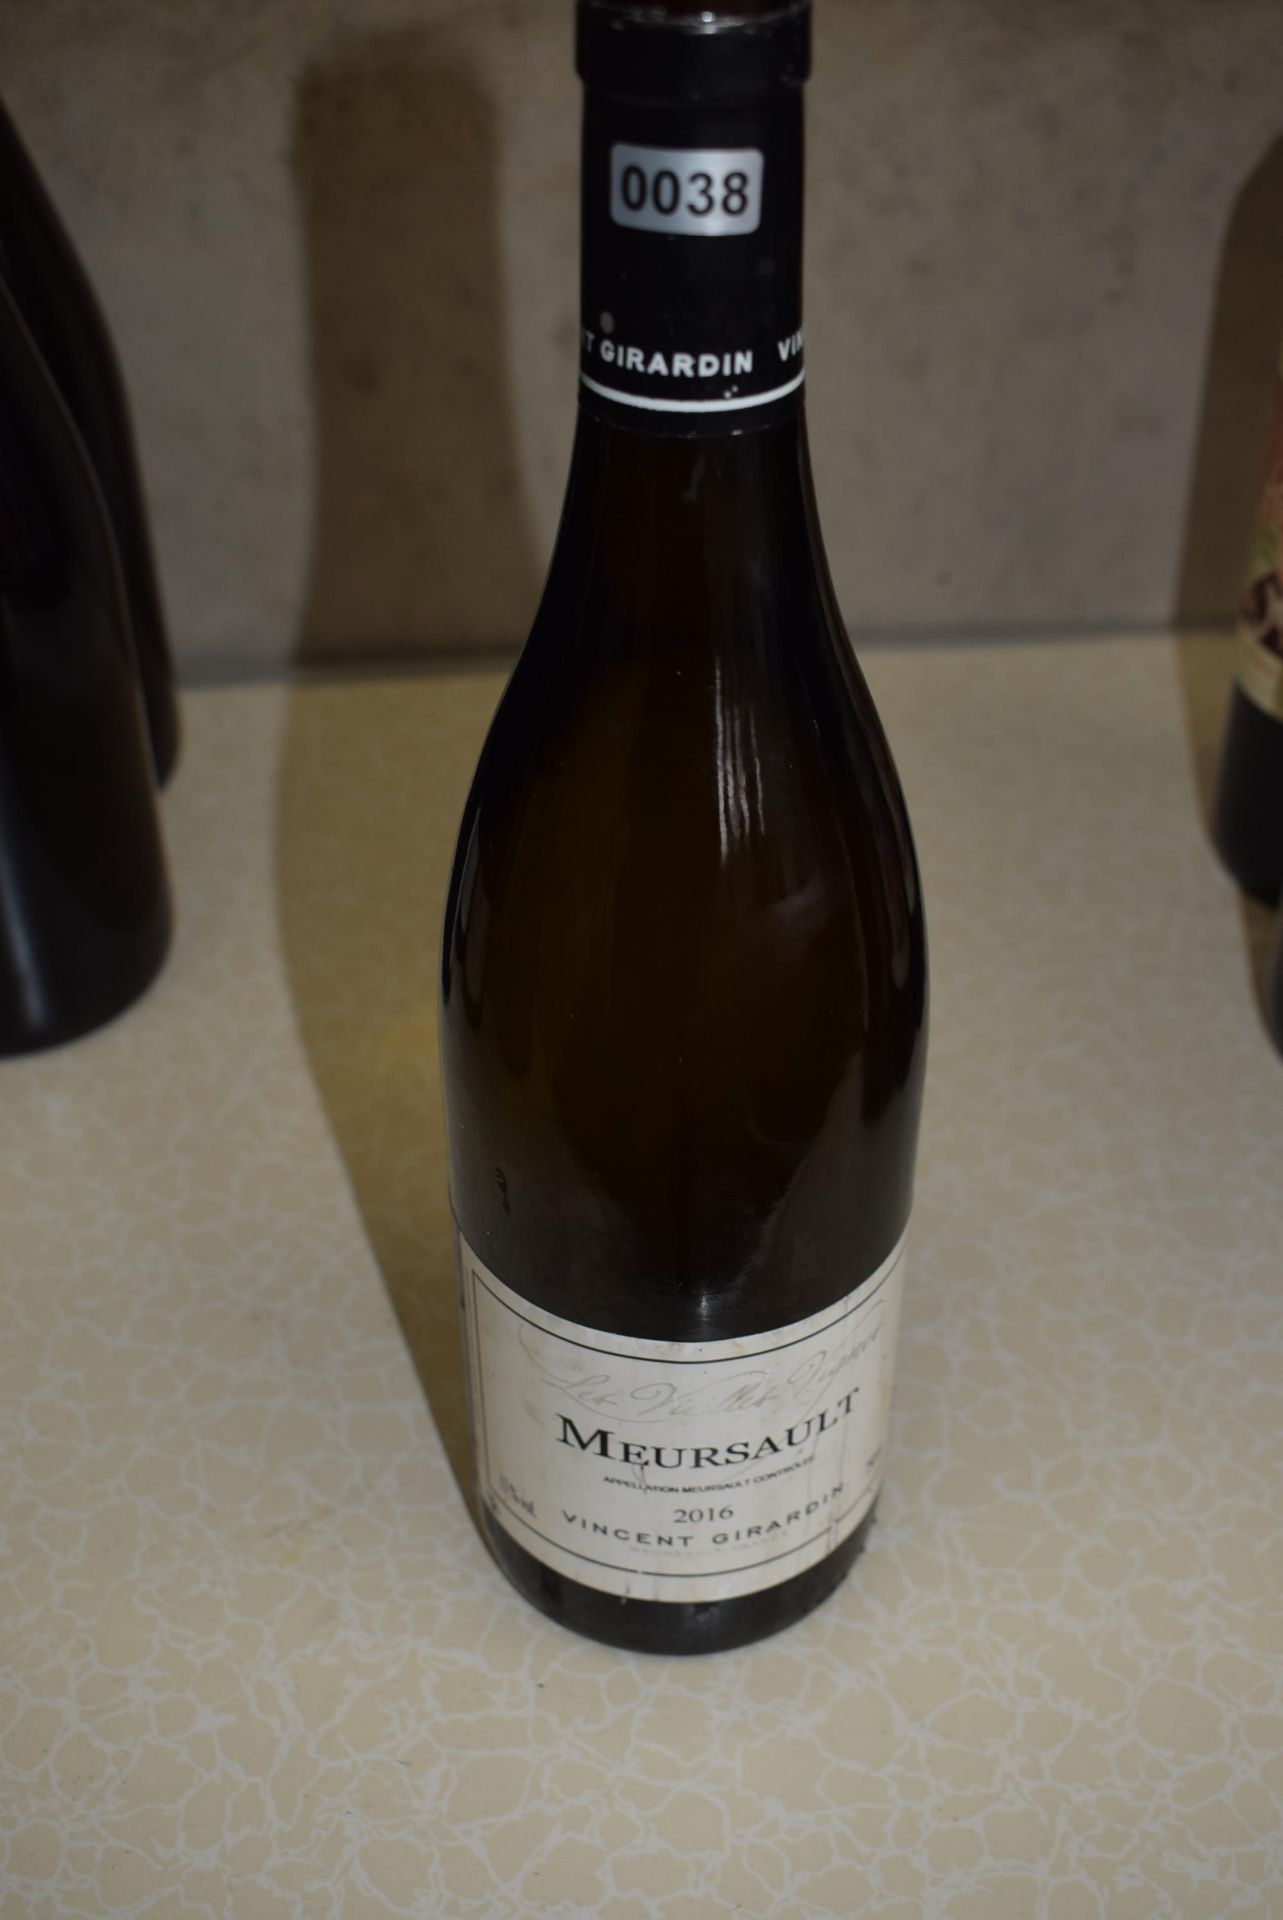 1 x 75 cl 2016 Vincent Girardin Meursault Les Vieilles Vignes White Burgundy